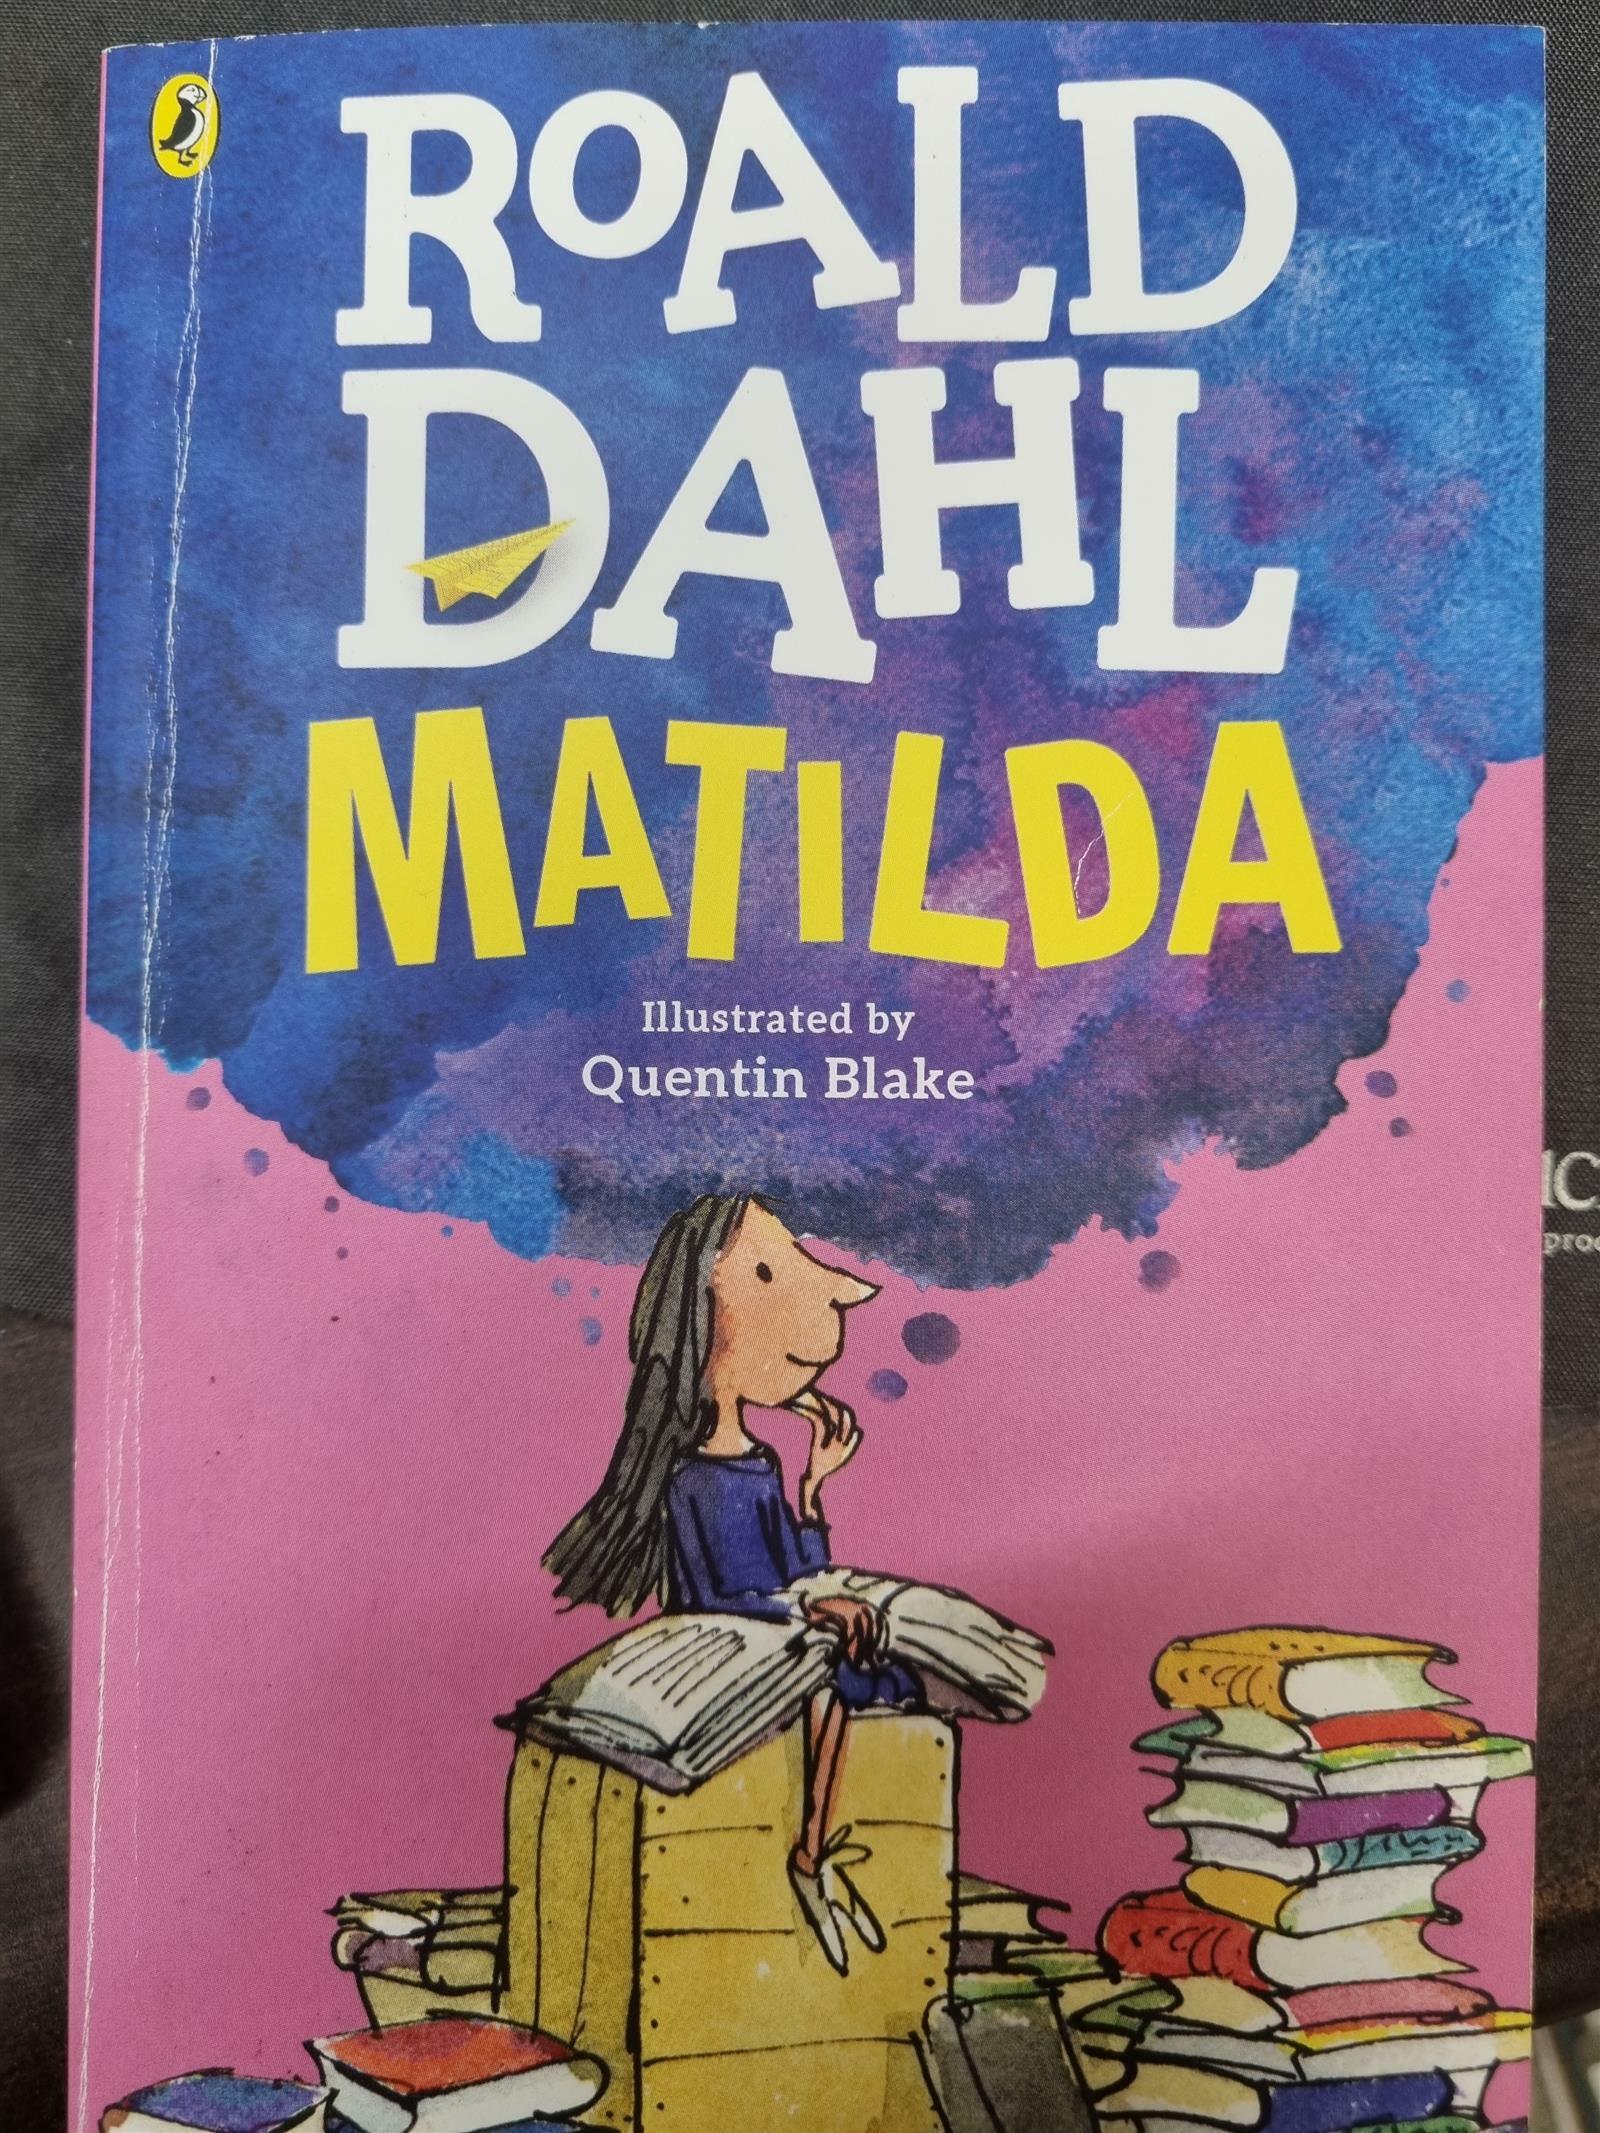 [중고] Matilda (Paperback, 미국판)